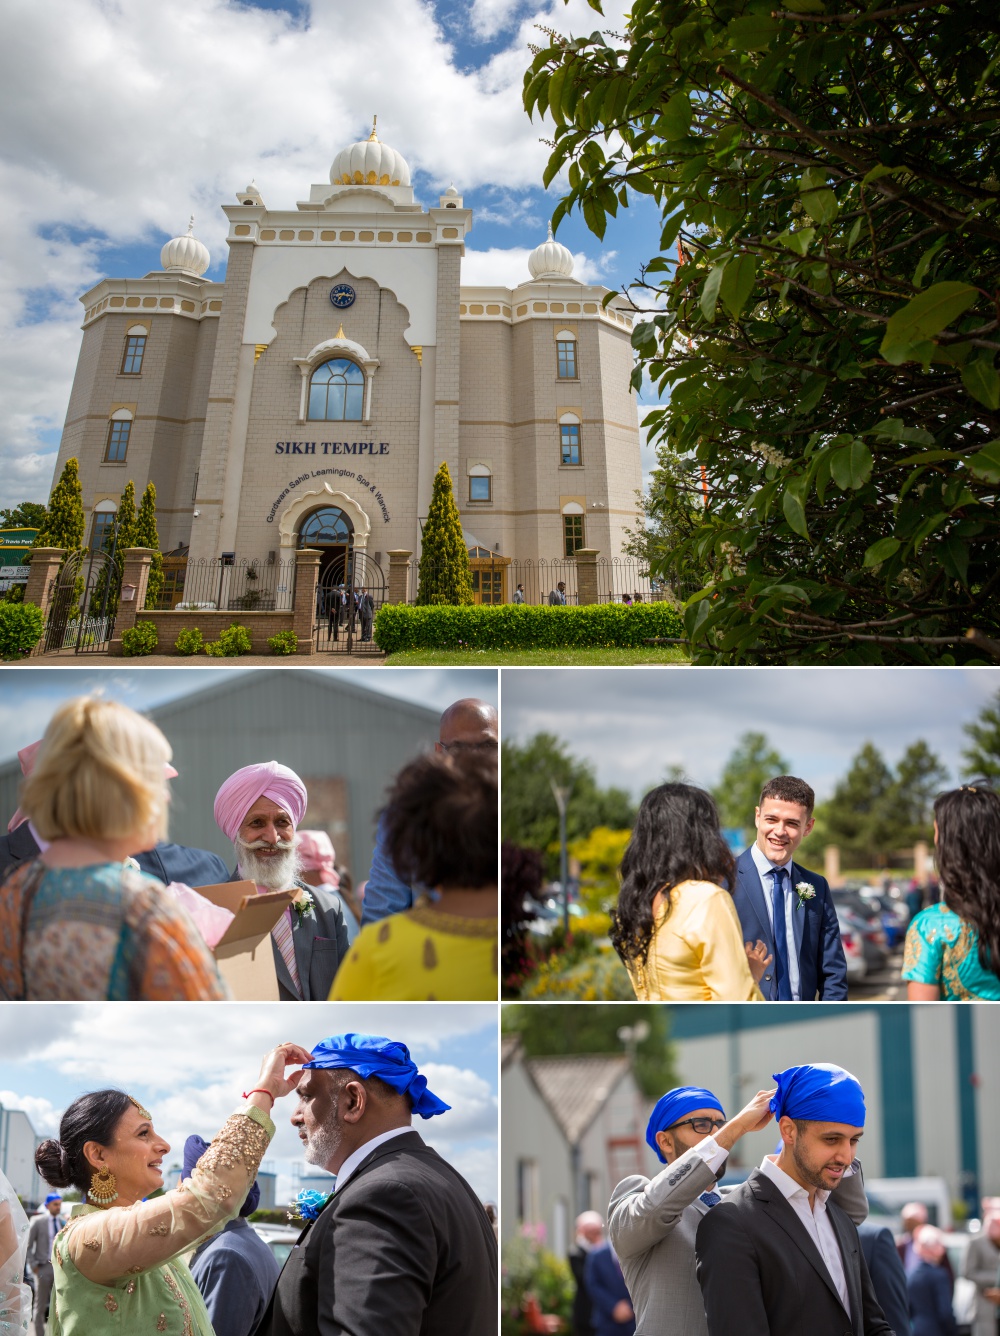 Sikh Wedding Photography at Nailcote Hall Bally and Sukhpreet 11 1